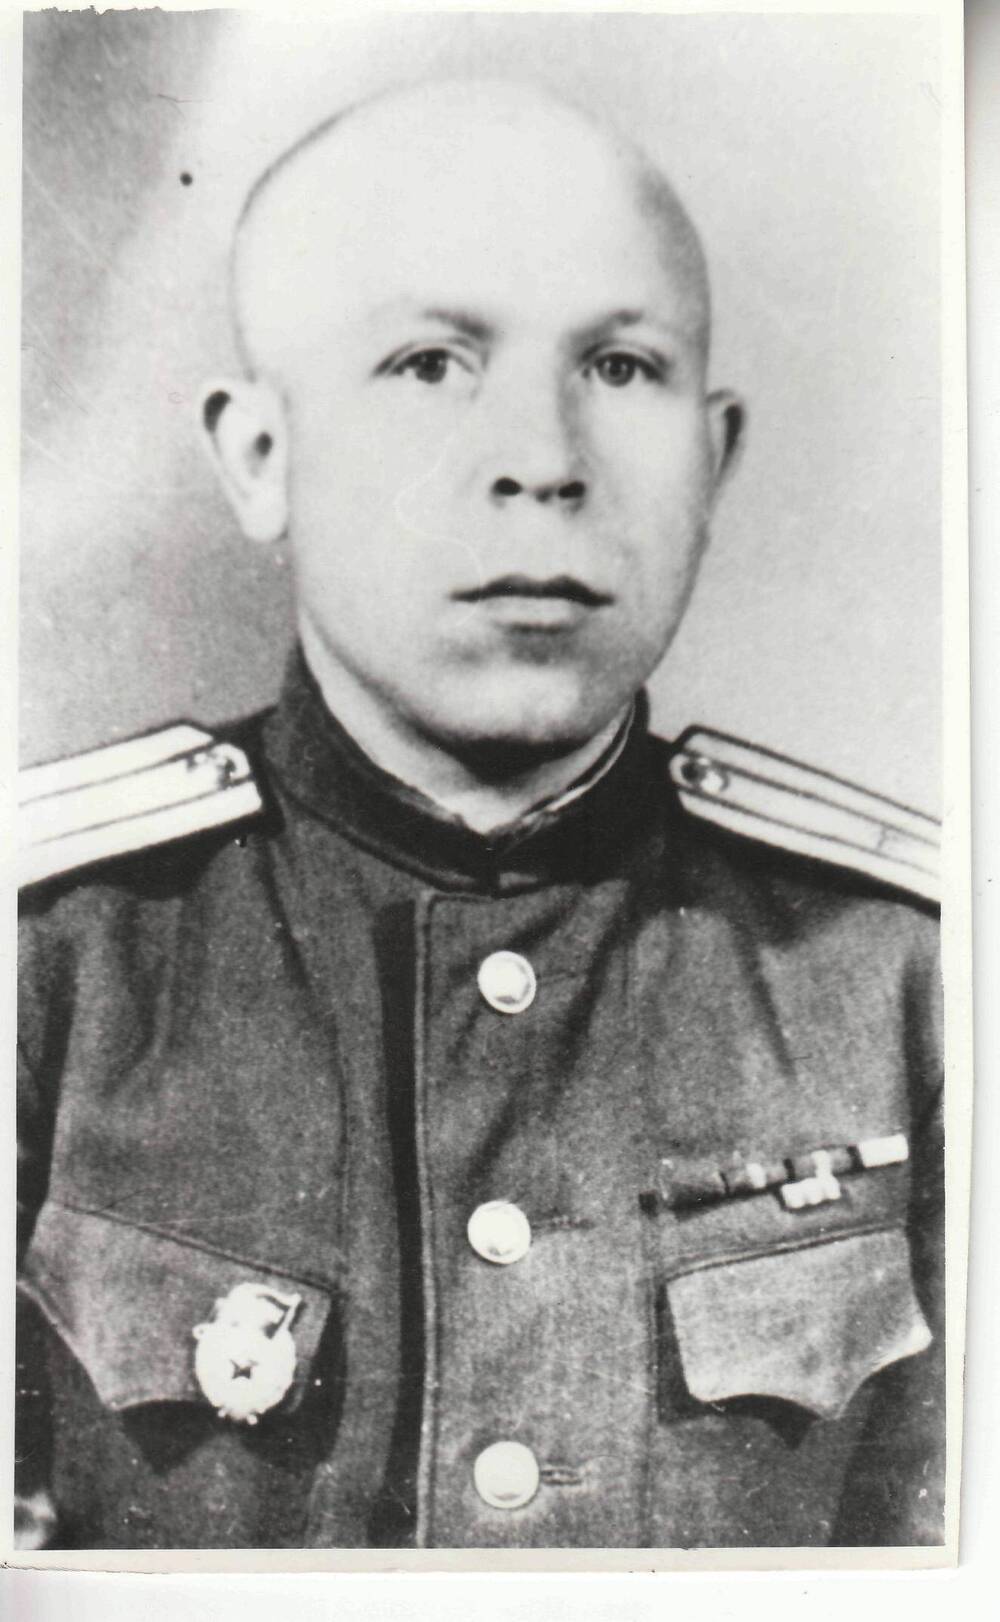 Фото (копия)  ч/б, глянцевое, портрет погрудный ветеран 57 армии Новосельцев И. М.